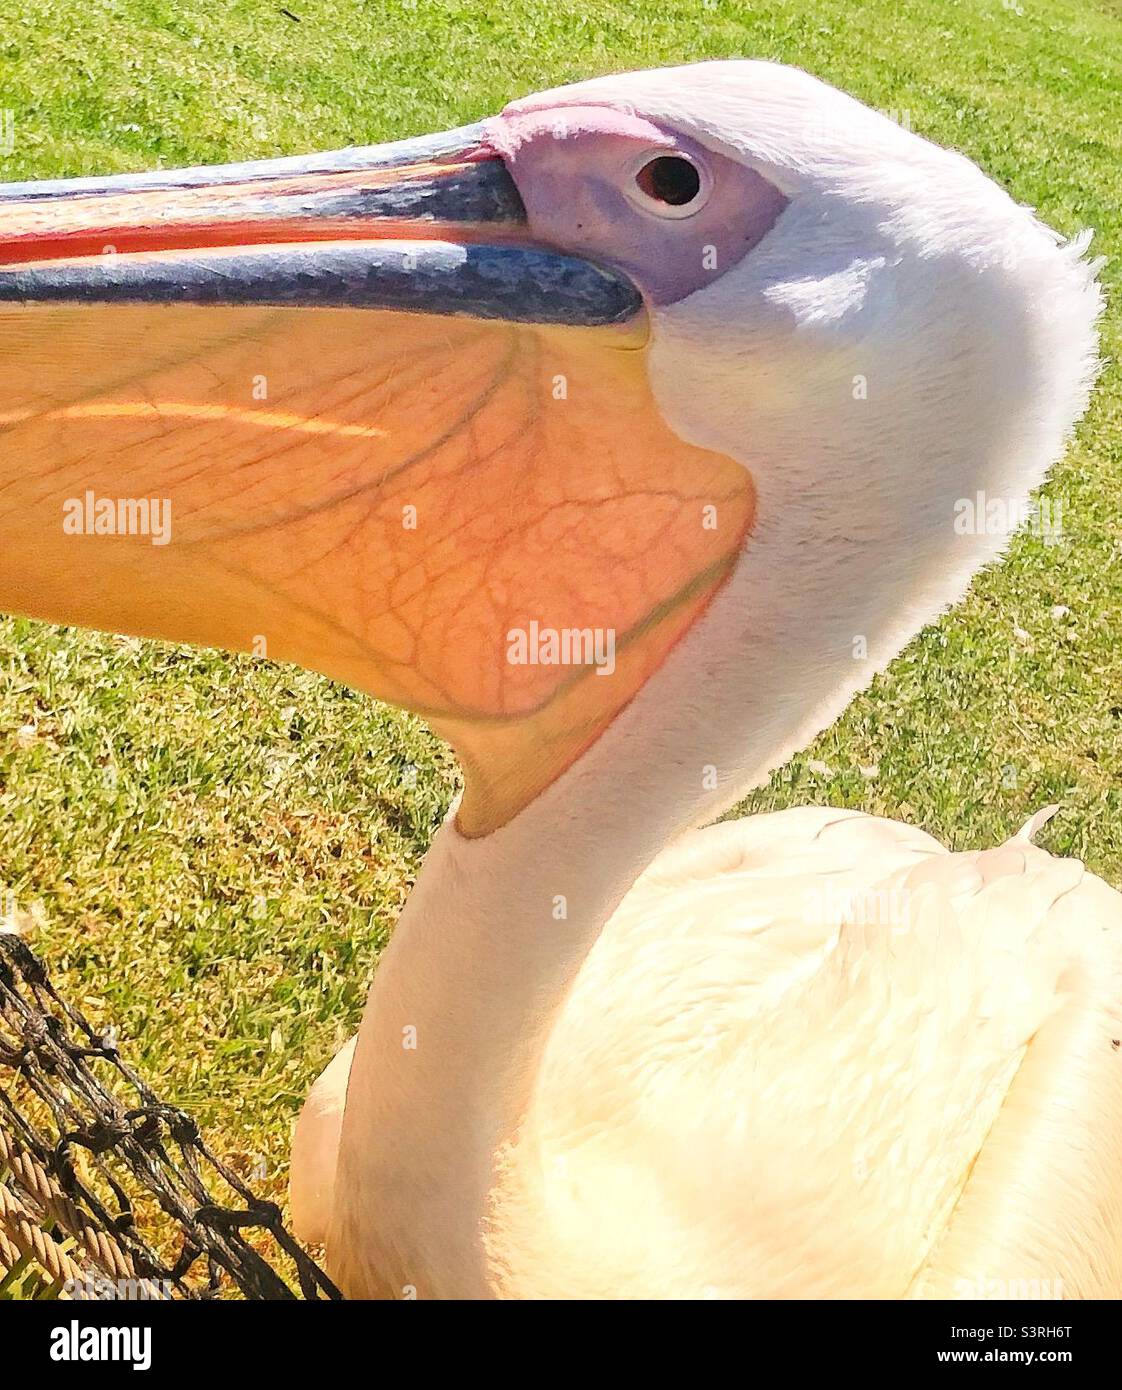 Nahaufnahme eines Pelikans und seiner Schlucht, wo die Adern sichtbar sind Stockfoto